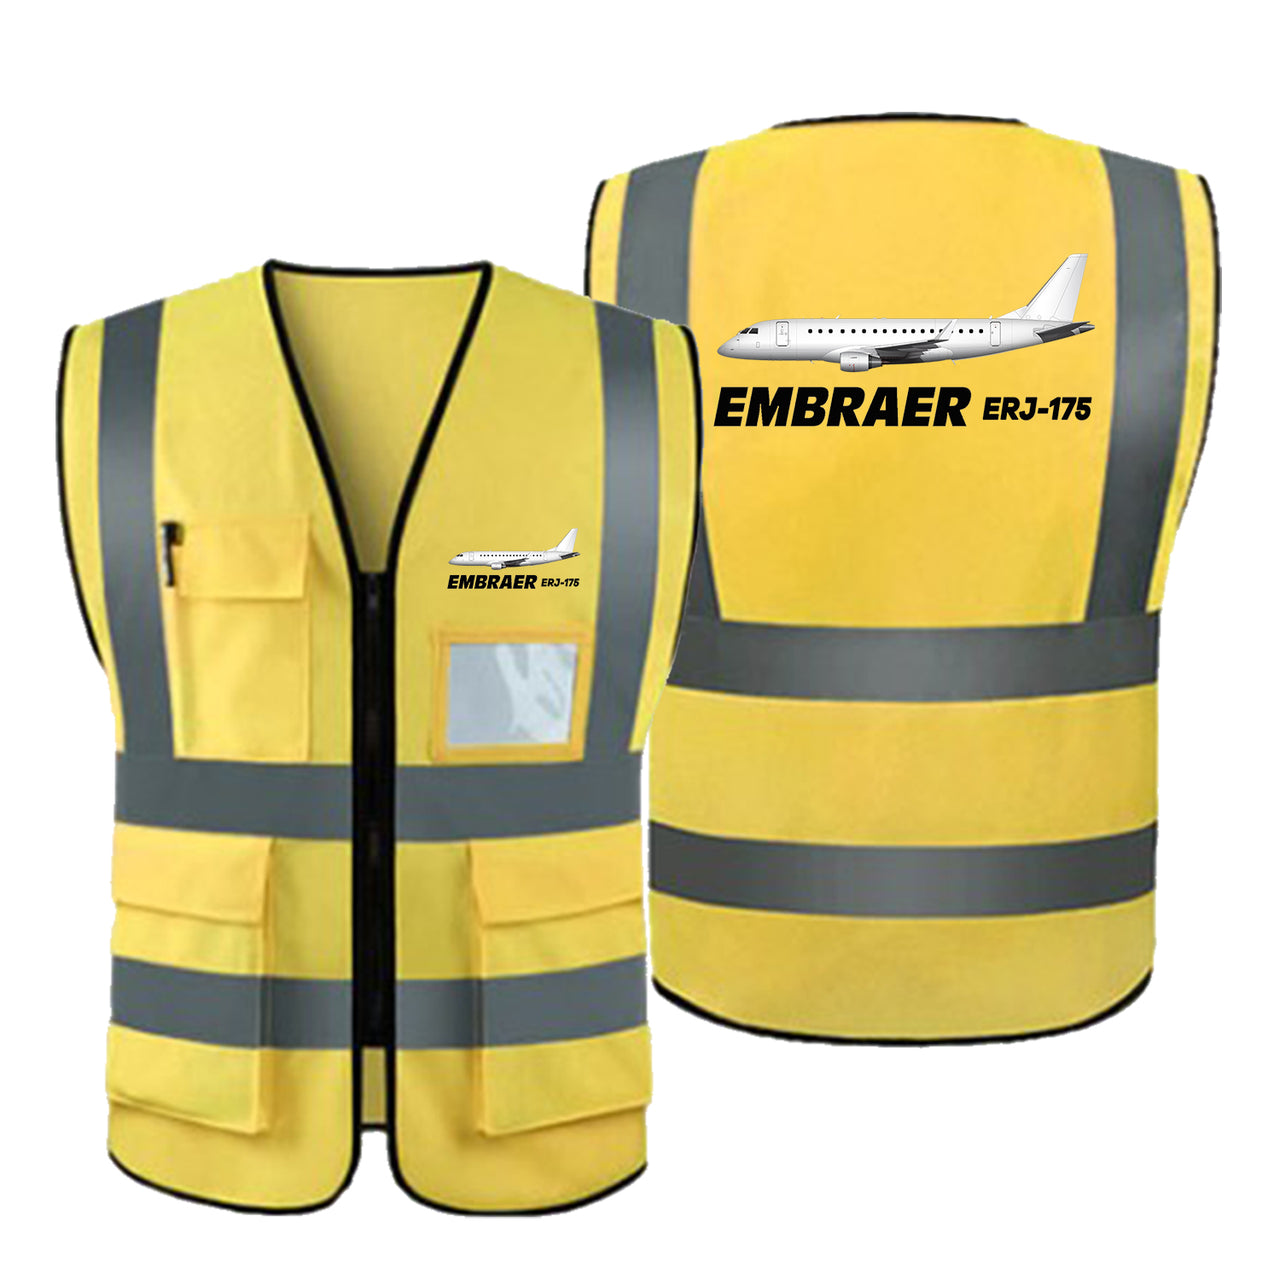 The Embraer ERJ-175 Designed Reflective Vests